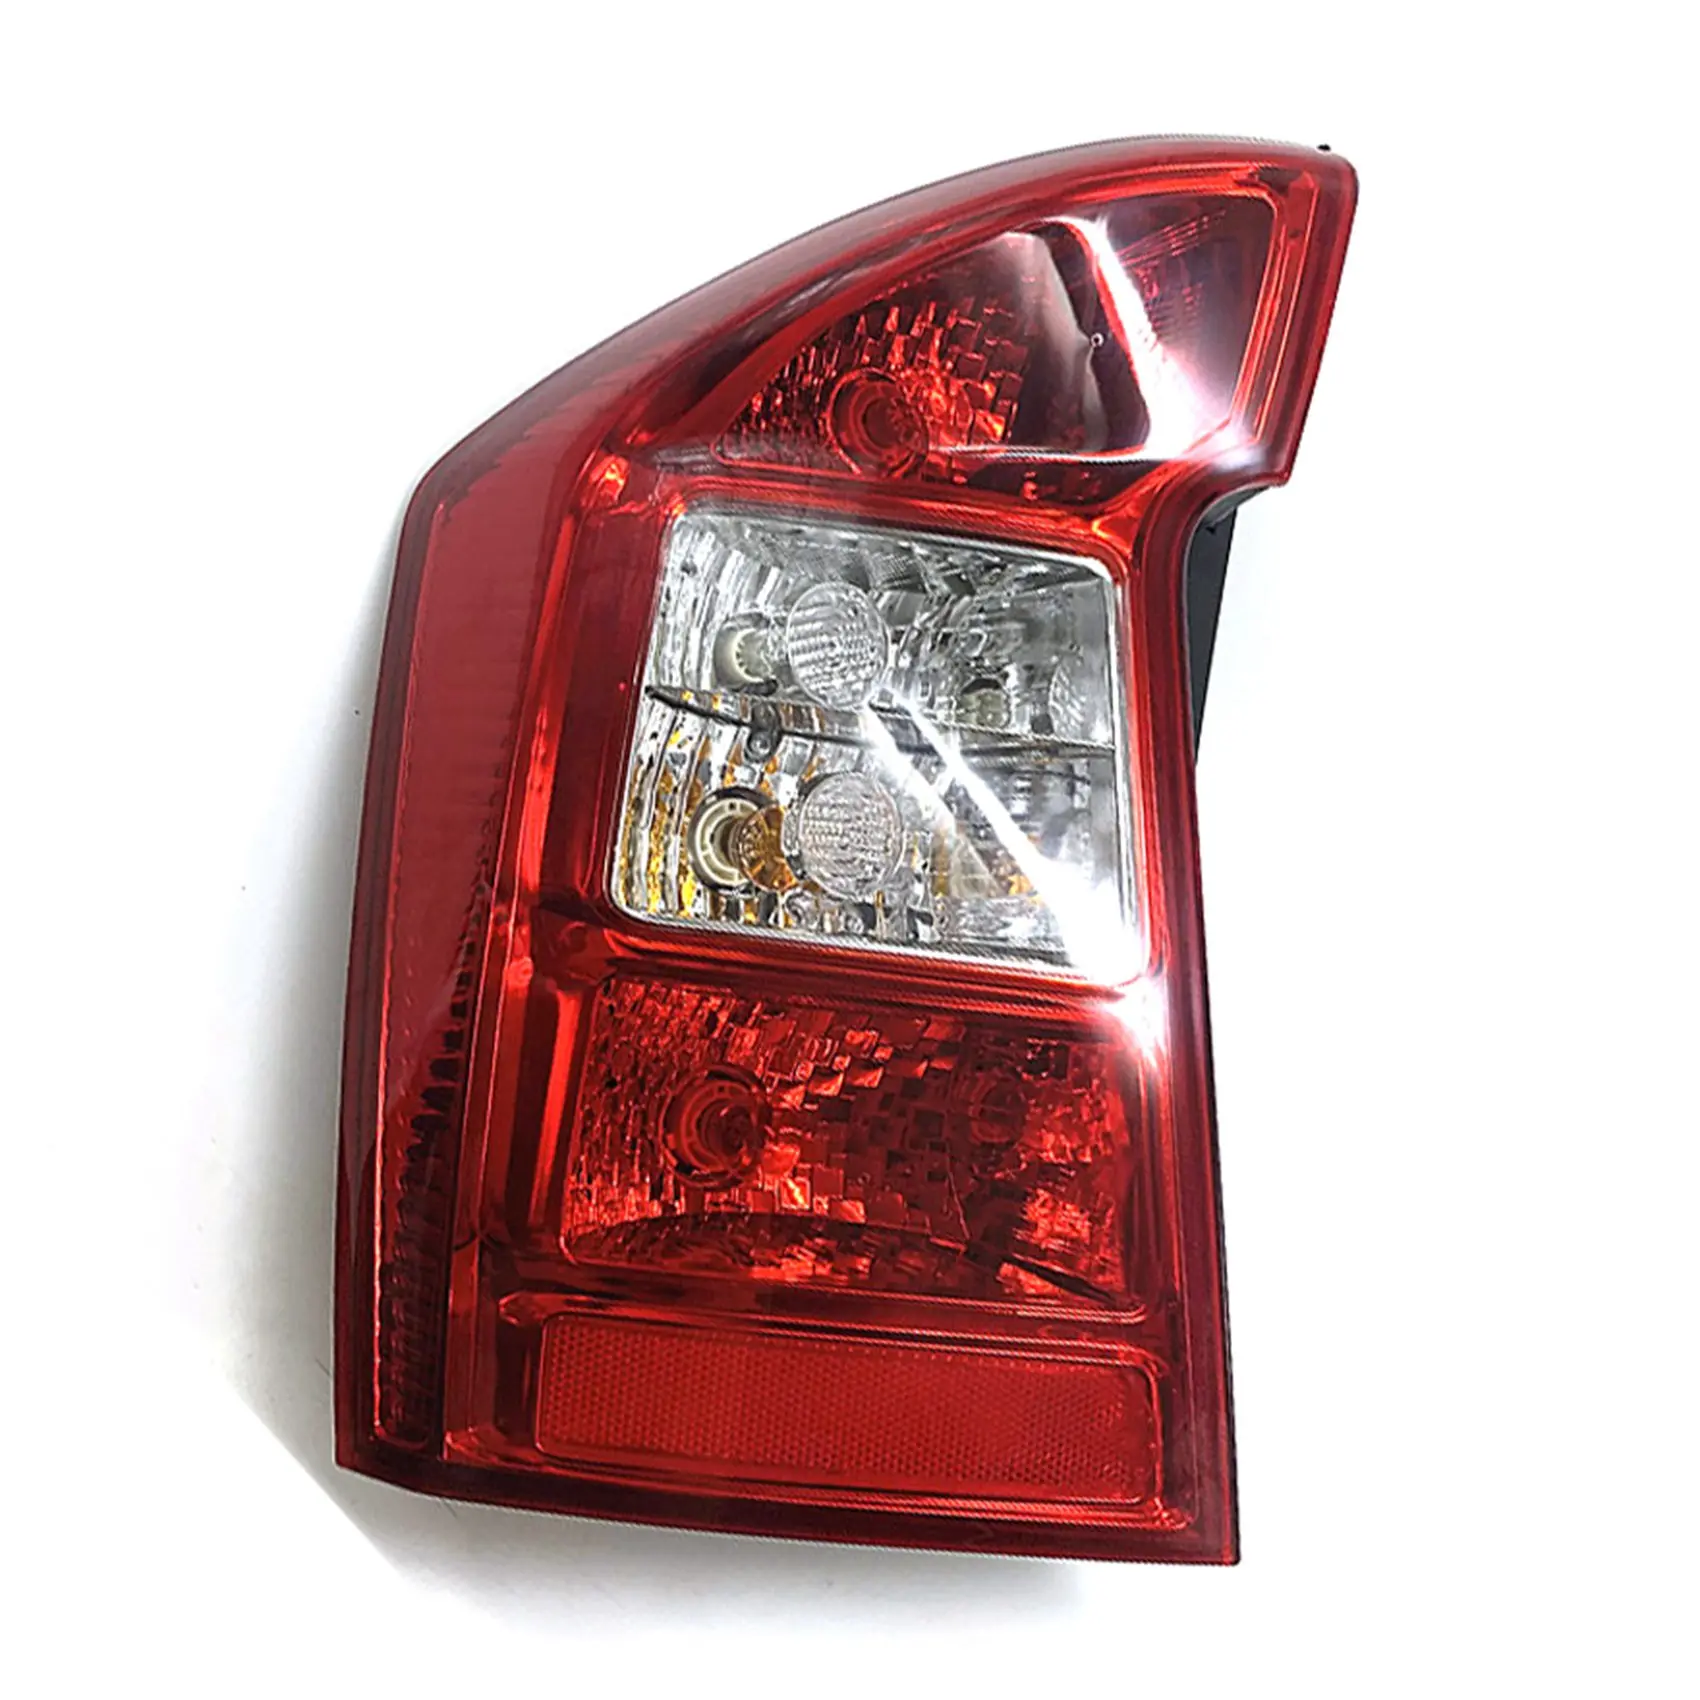 

Left Rear Bumper Tail Light Rear Fog Lamp Driving Light Brake Light for Kia Rondo Carens 2007-2012 924011D000